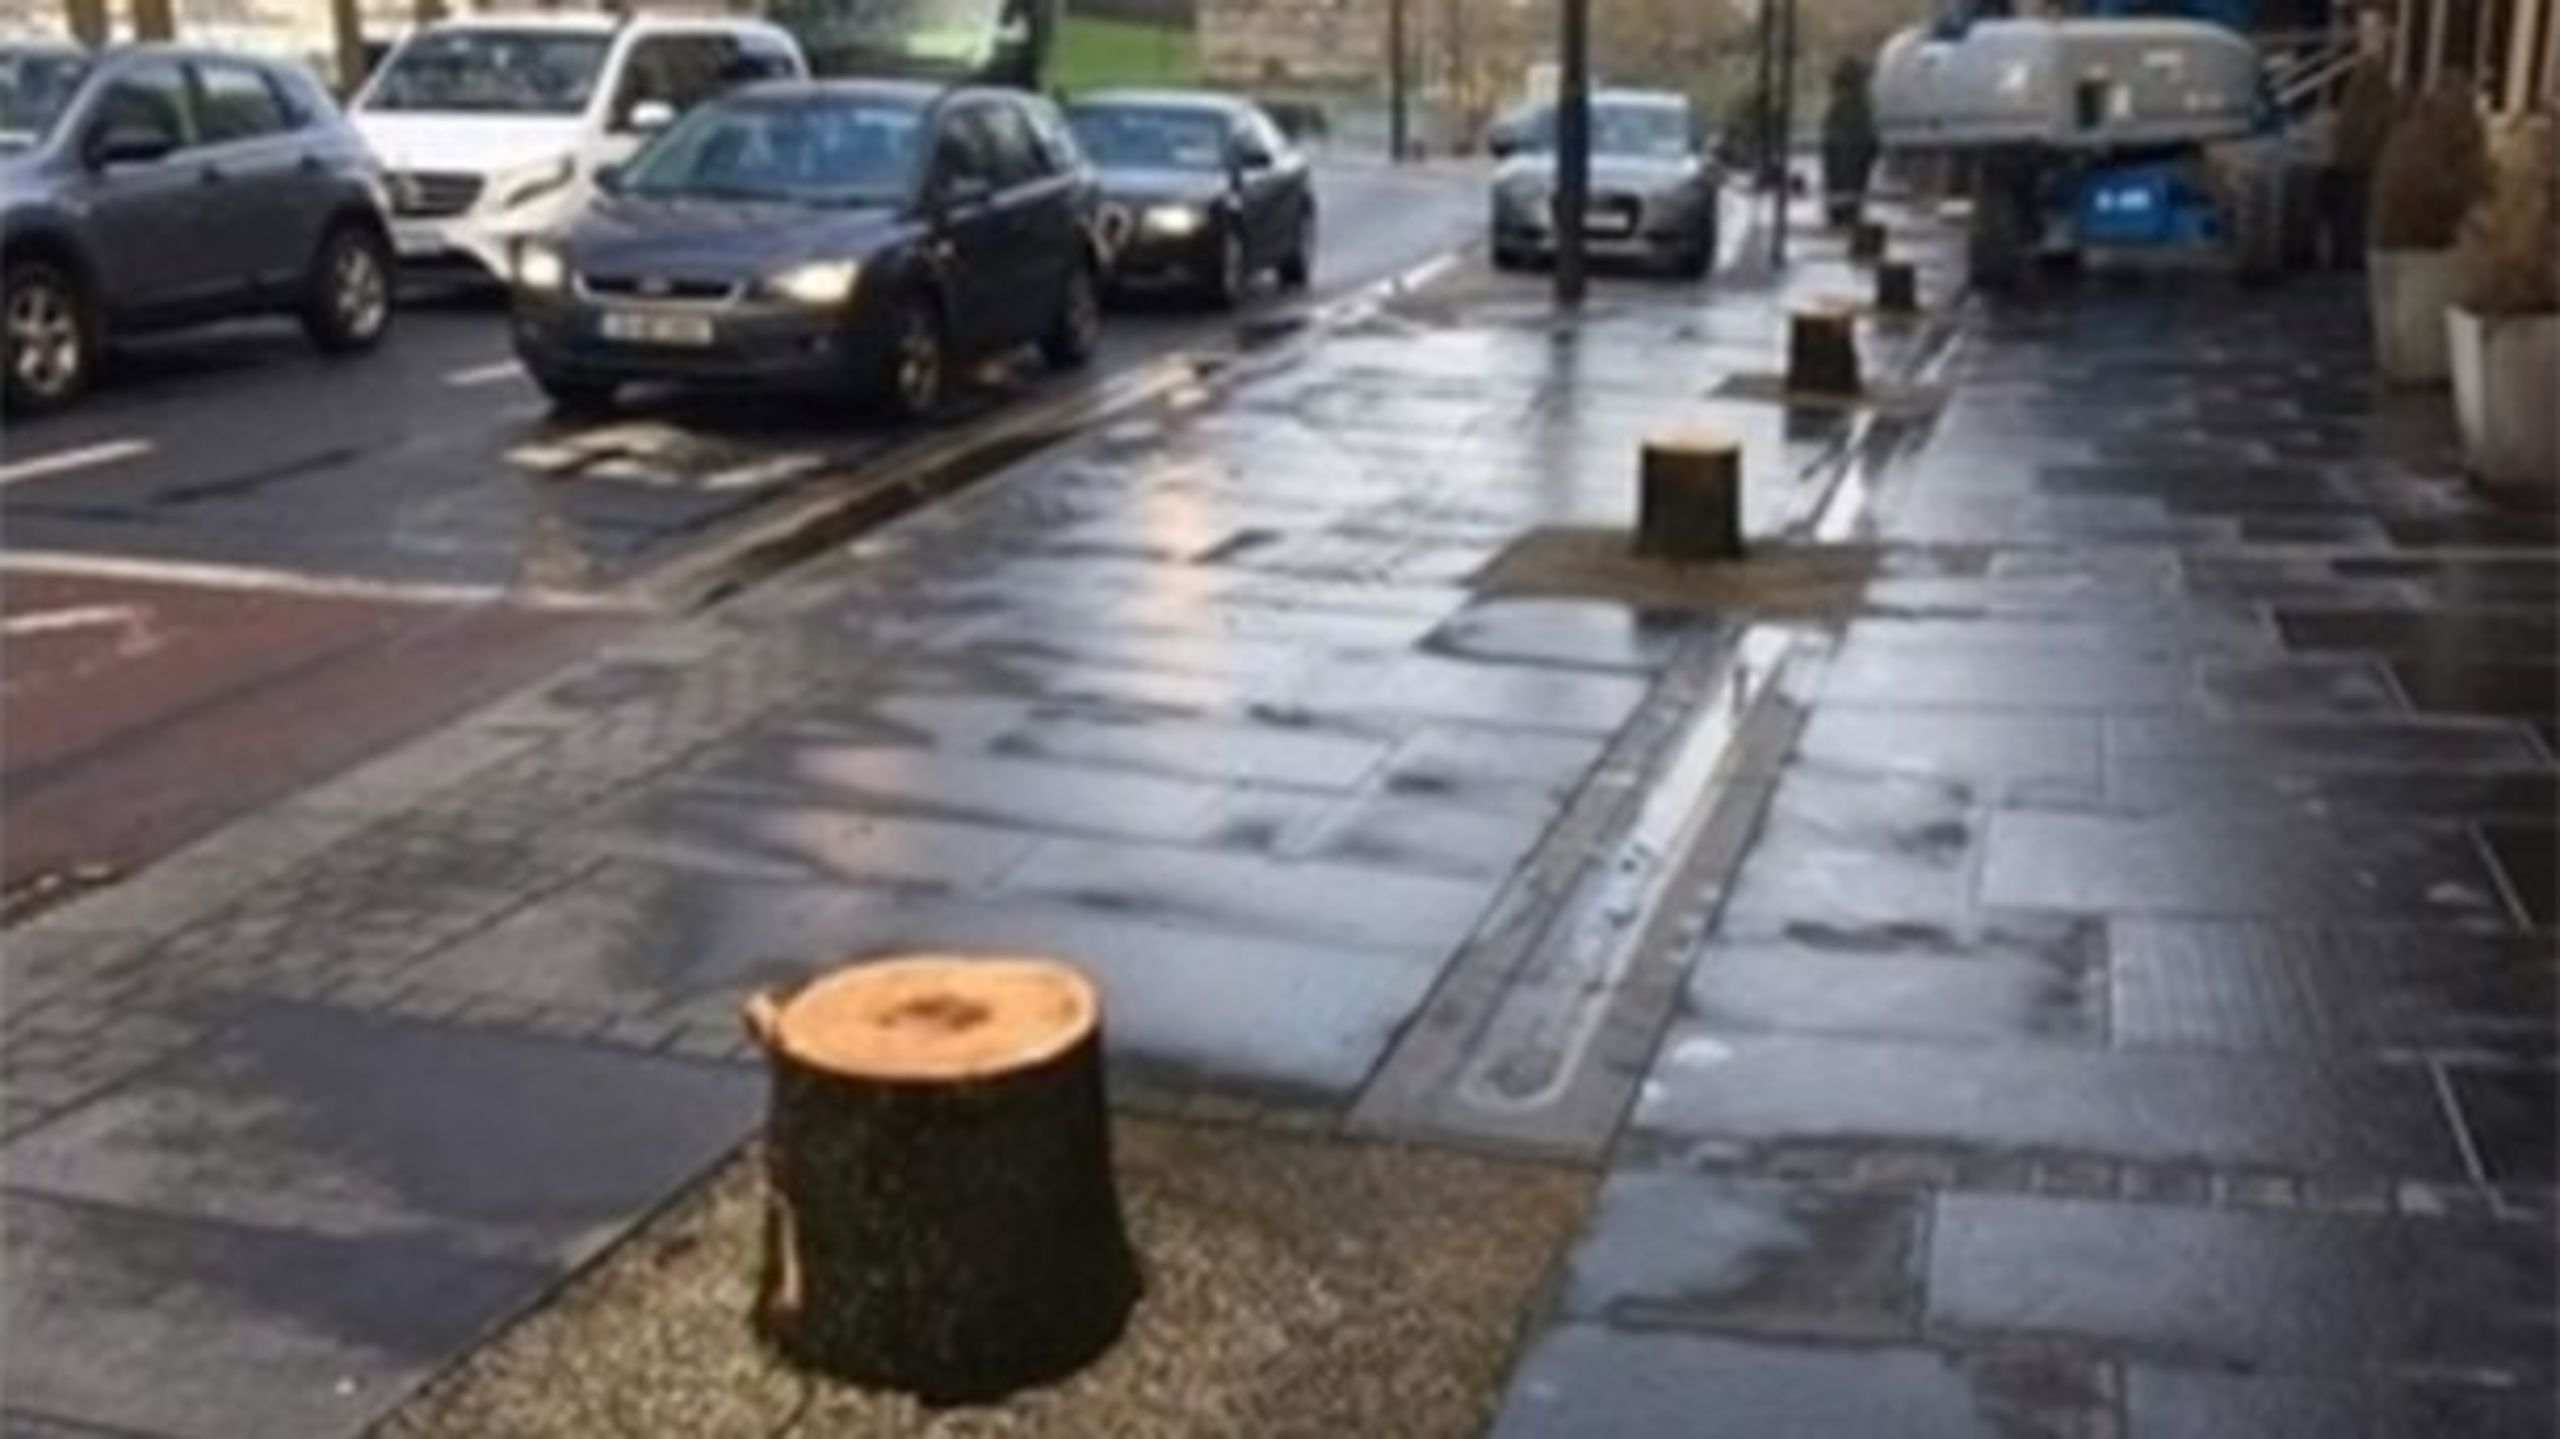 Den sydirske by Waterford foretog i løbet af vinteren en omfattende beskæring af træer. Men det var ikke på grund af det nye 5G-mobilnetværk, oplyser kommunen.